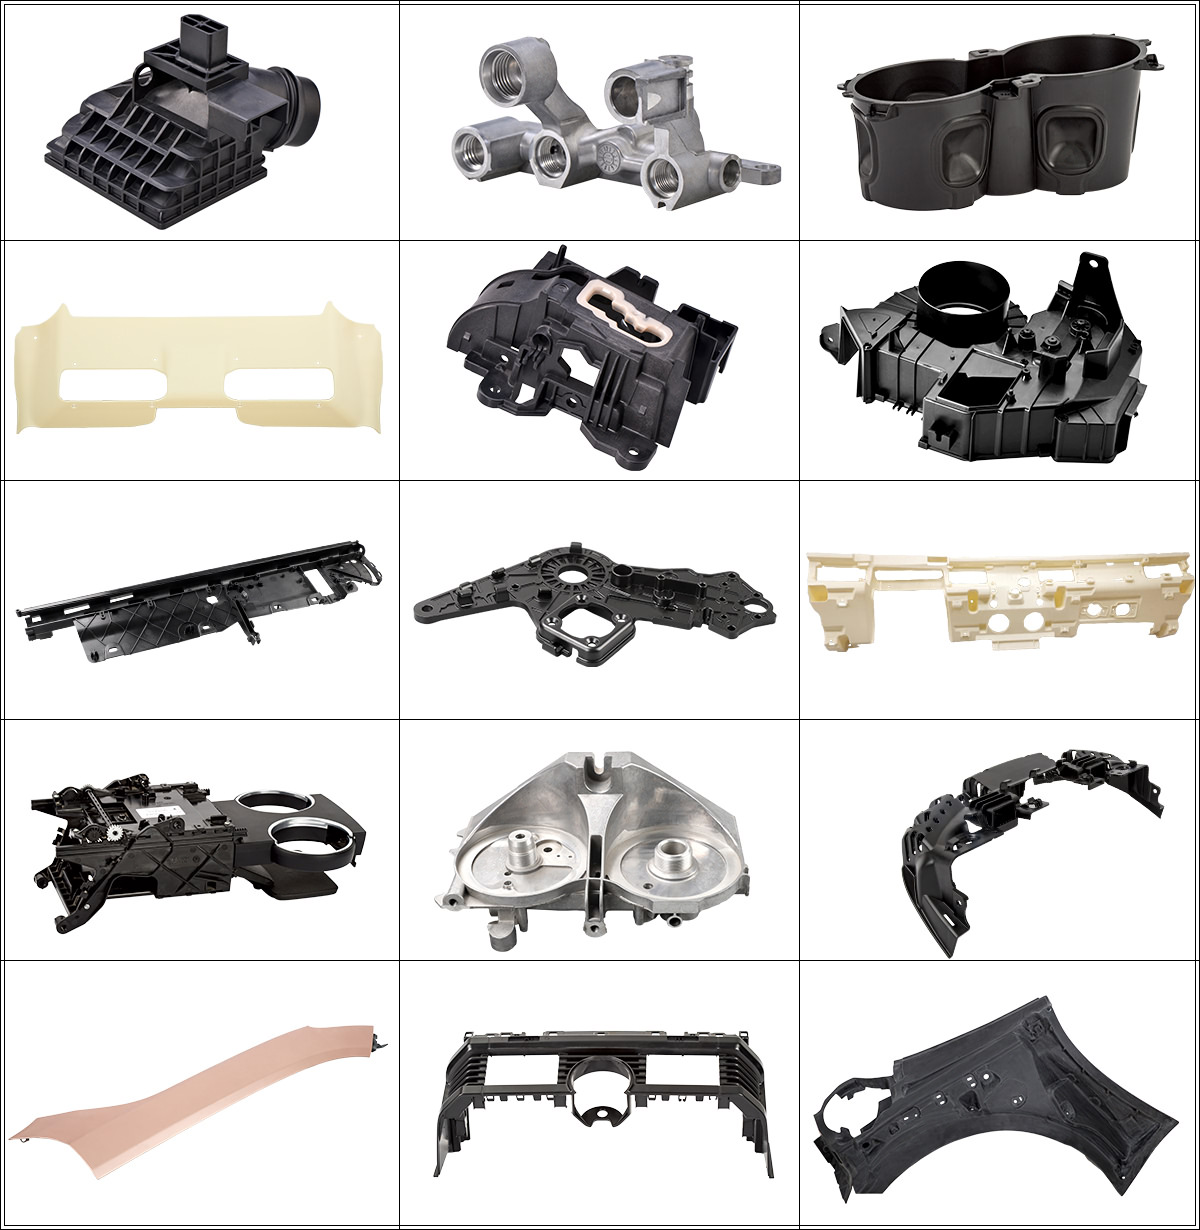 Automotive parts rapid prototype services